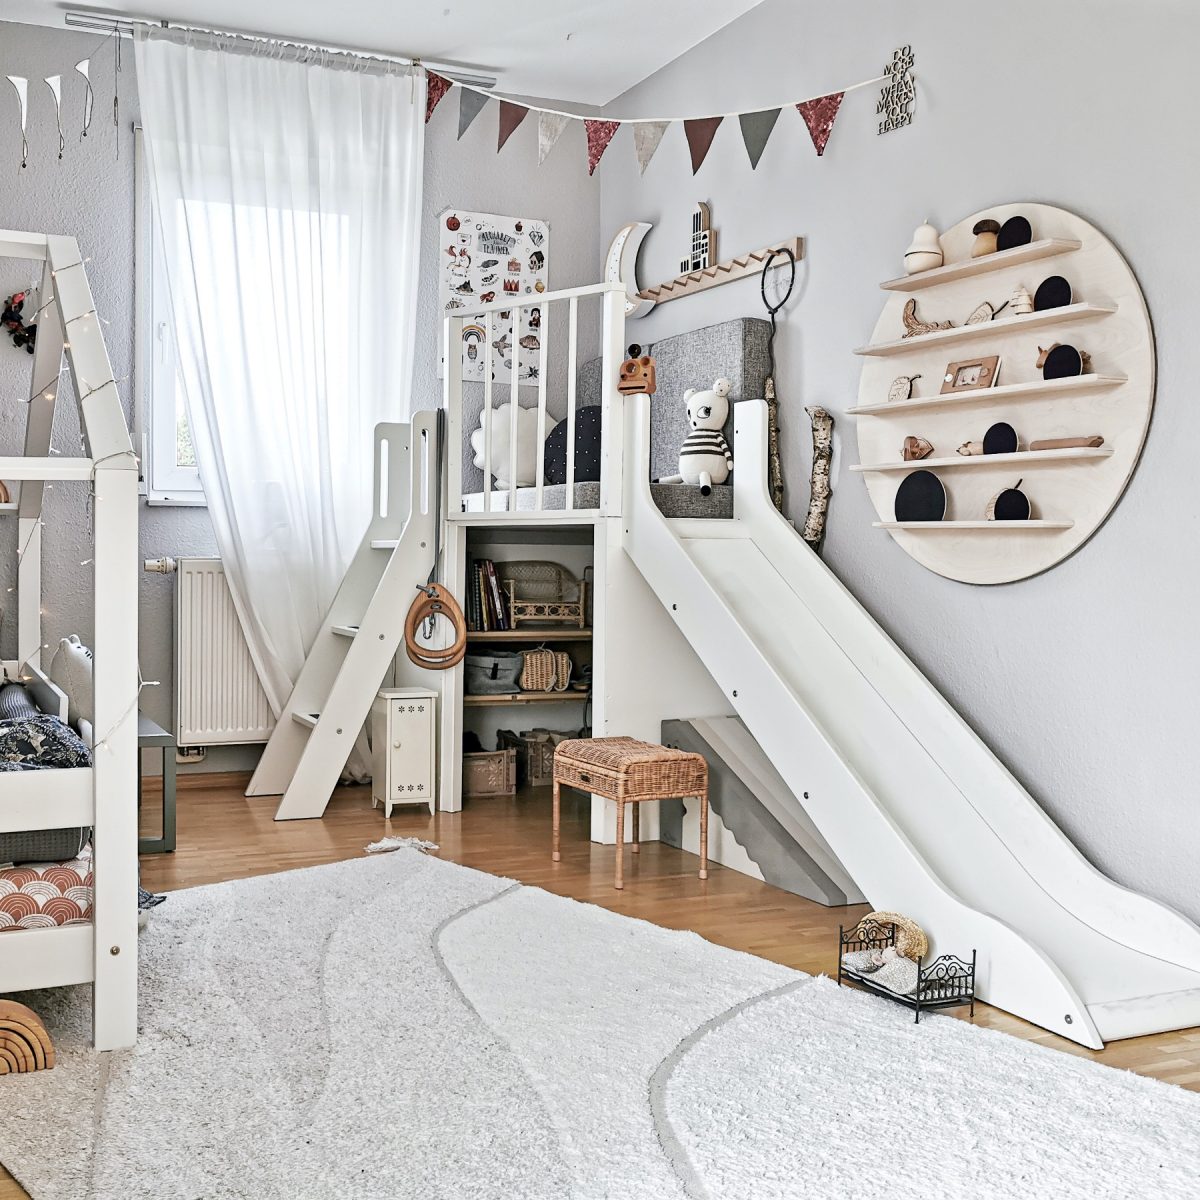 Fantasyroom Blog: Die schönsten Instagram Kinderzimmer - DIY Spielturm